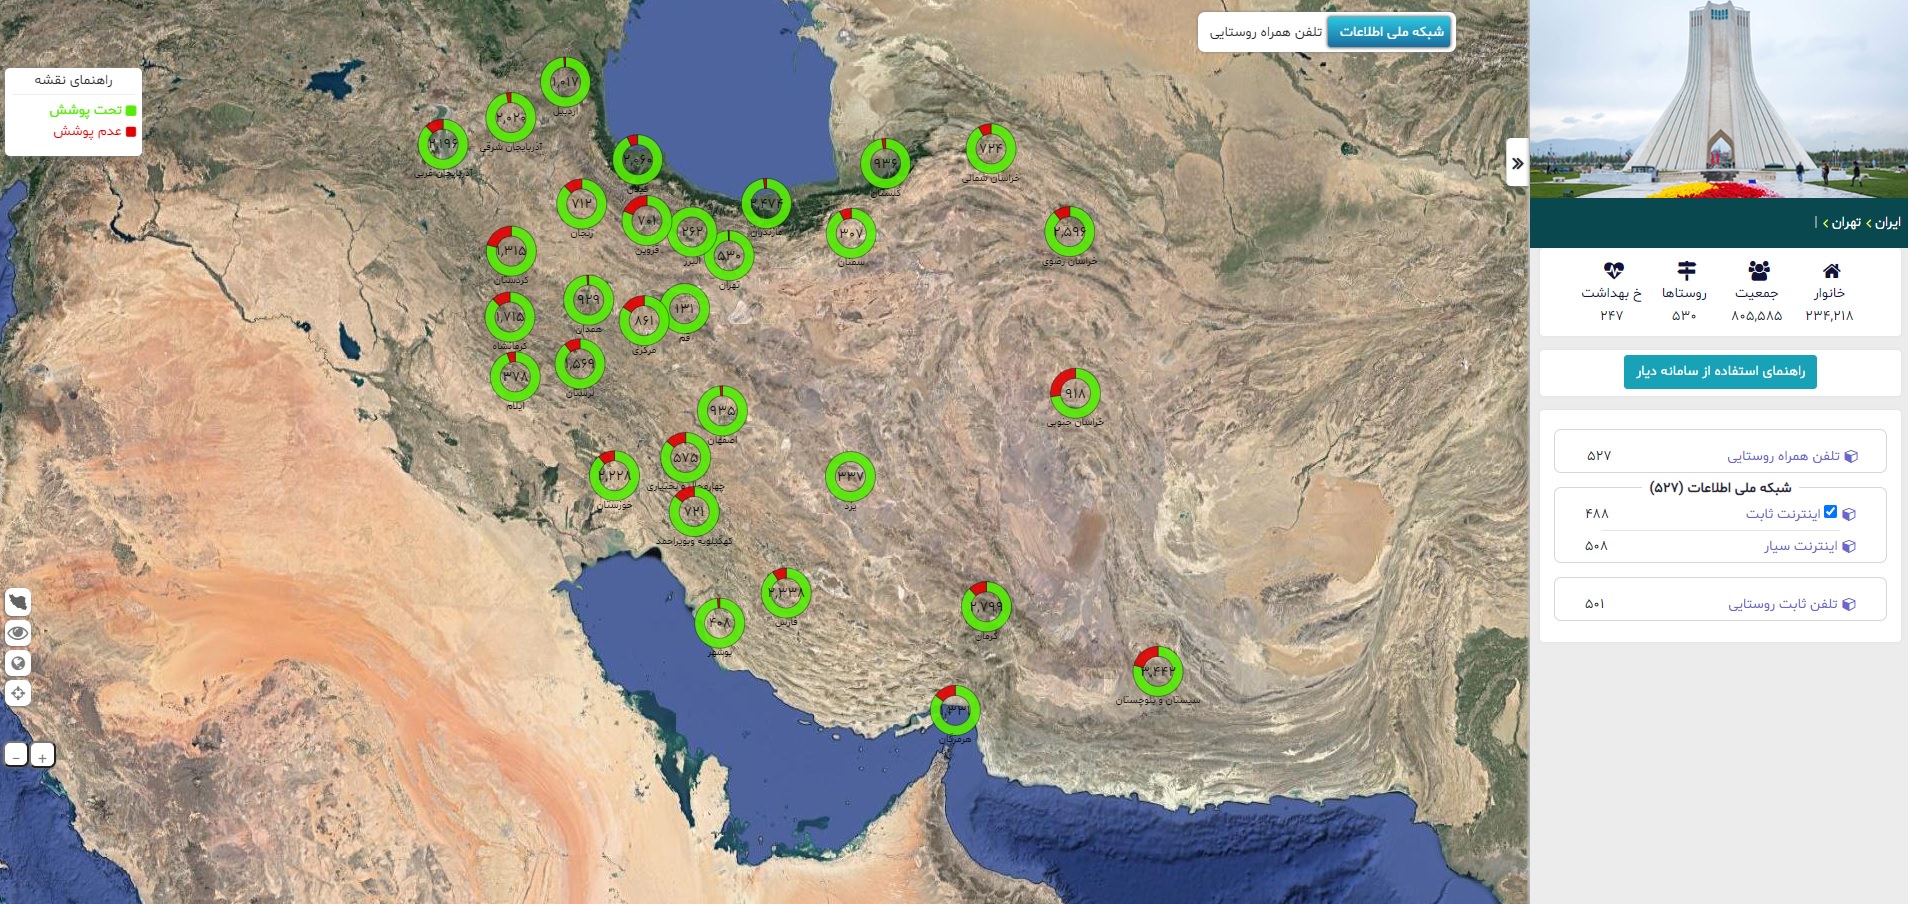 آذری جهرمی: ۹۸/۵ درصد روستاییان و ۱۰۰ درصد شهروندان ایرانی به اینترنت متصل هستند